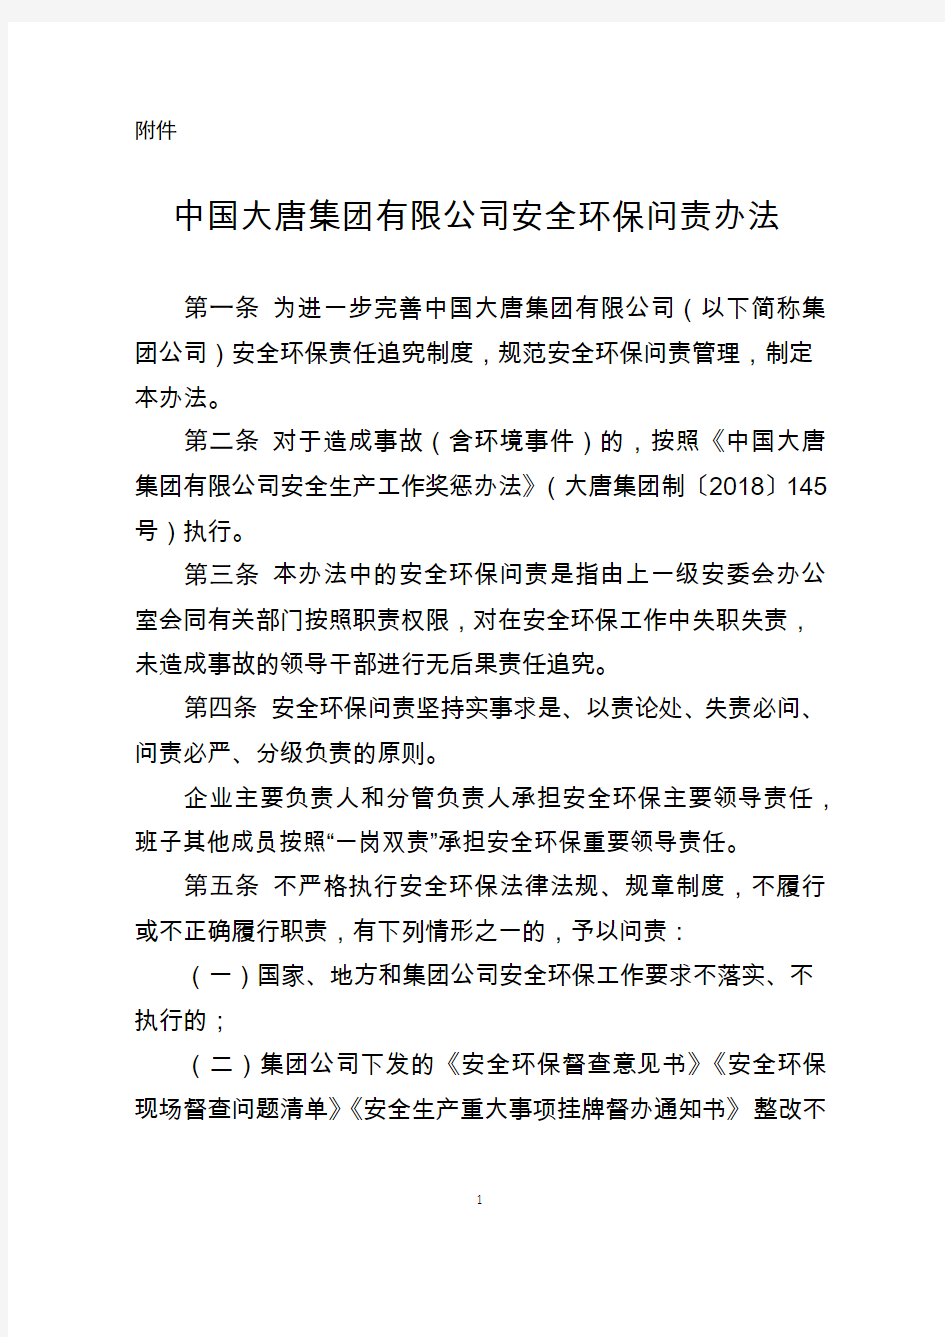 中国大唐集团有限公司安全环保问责办法